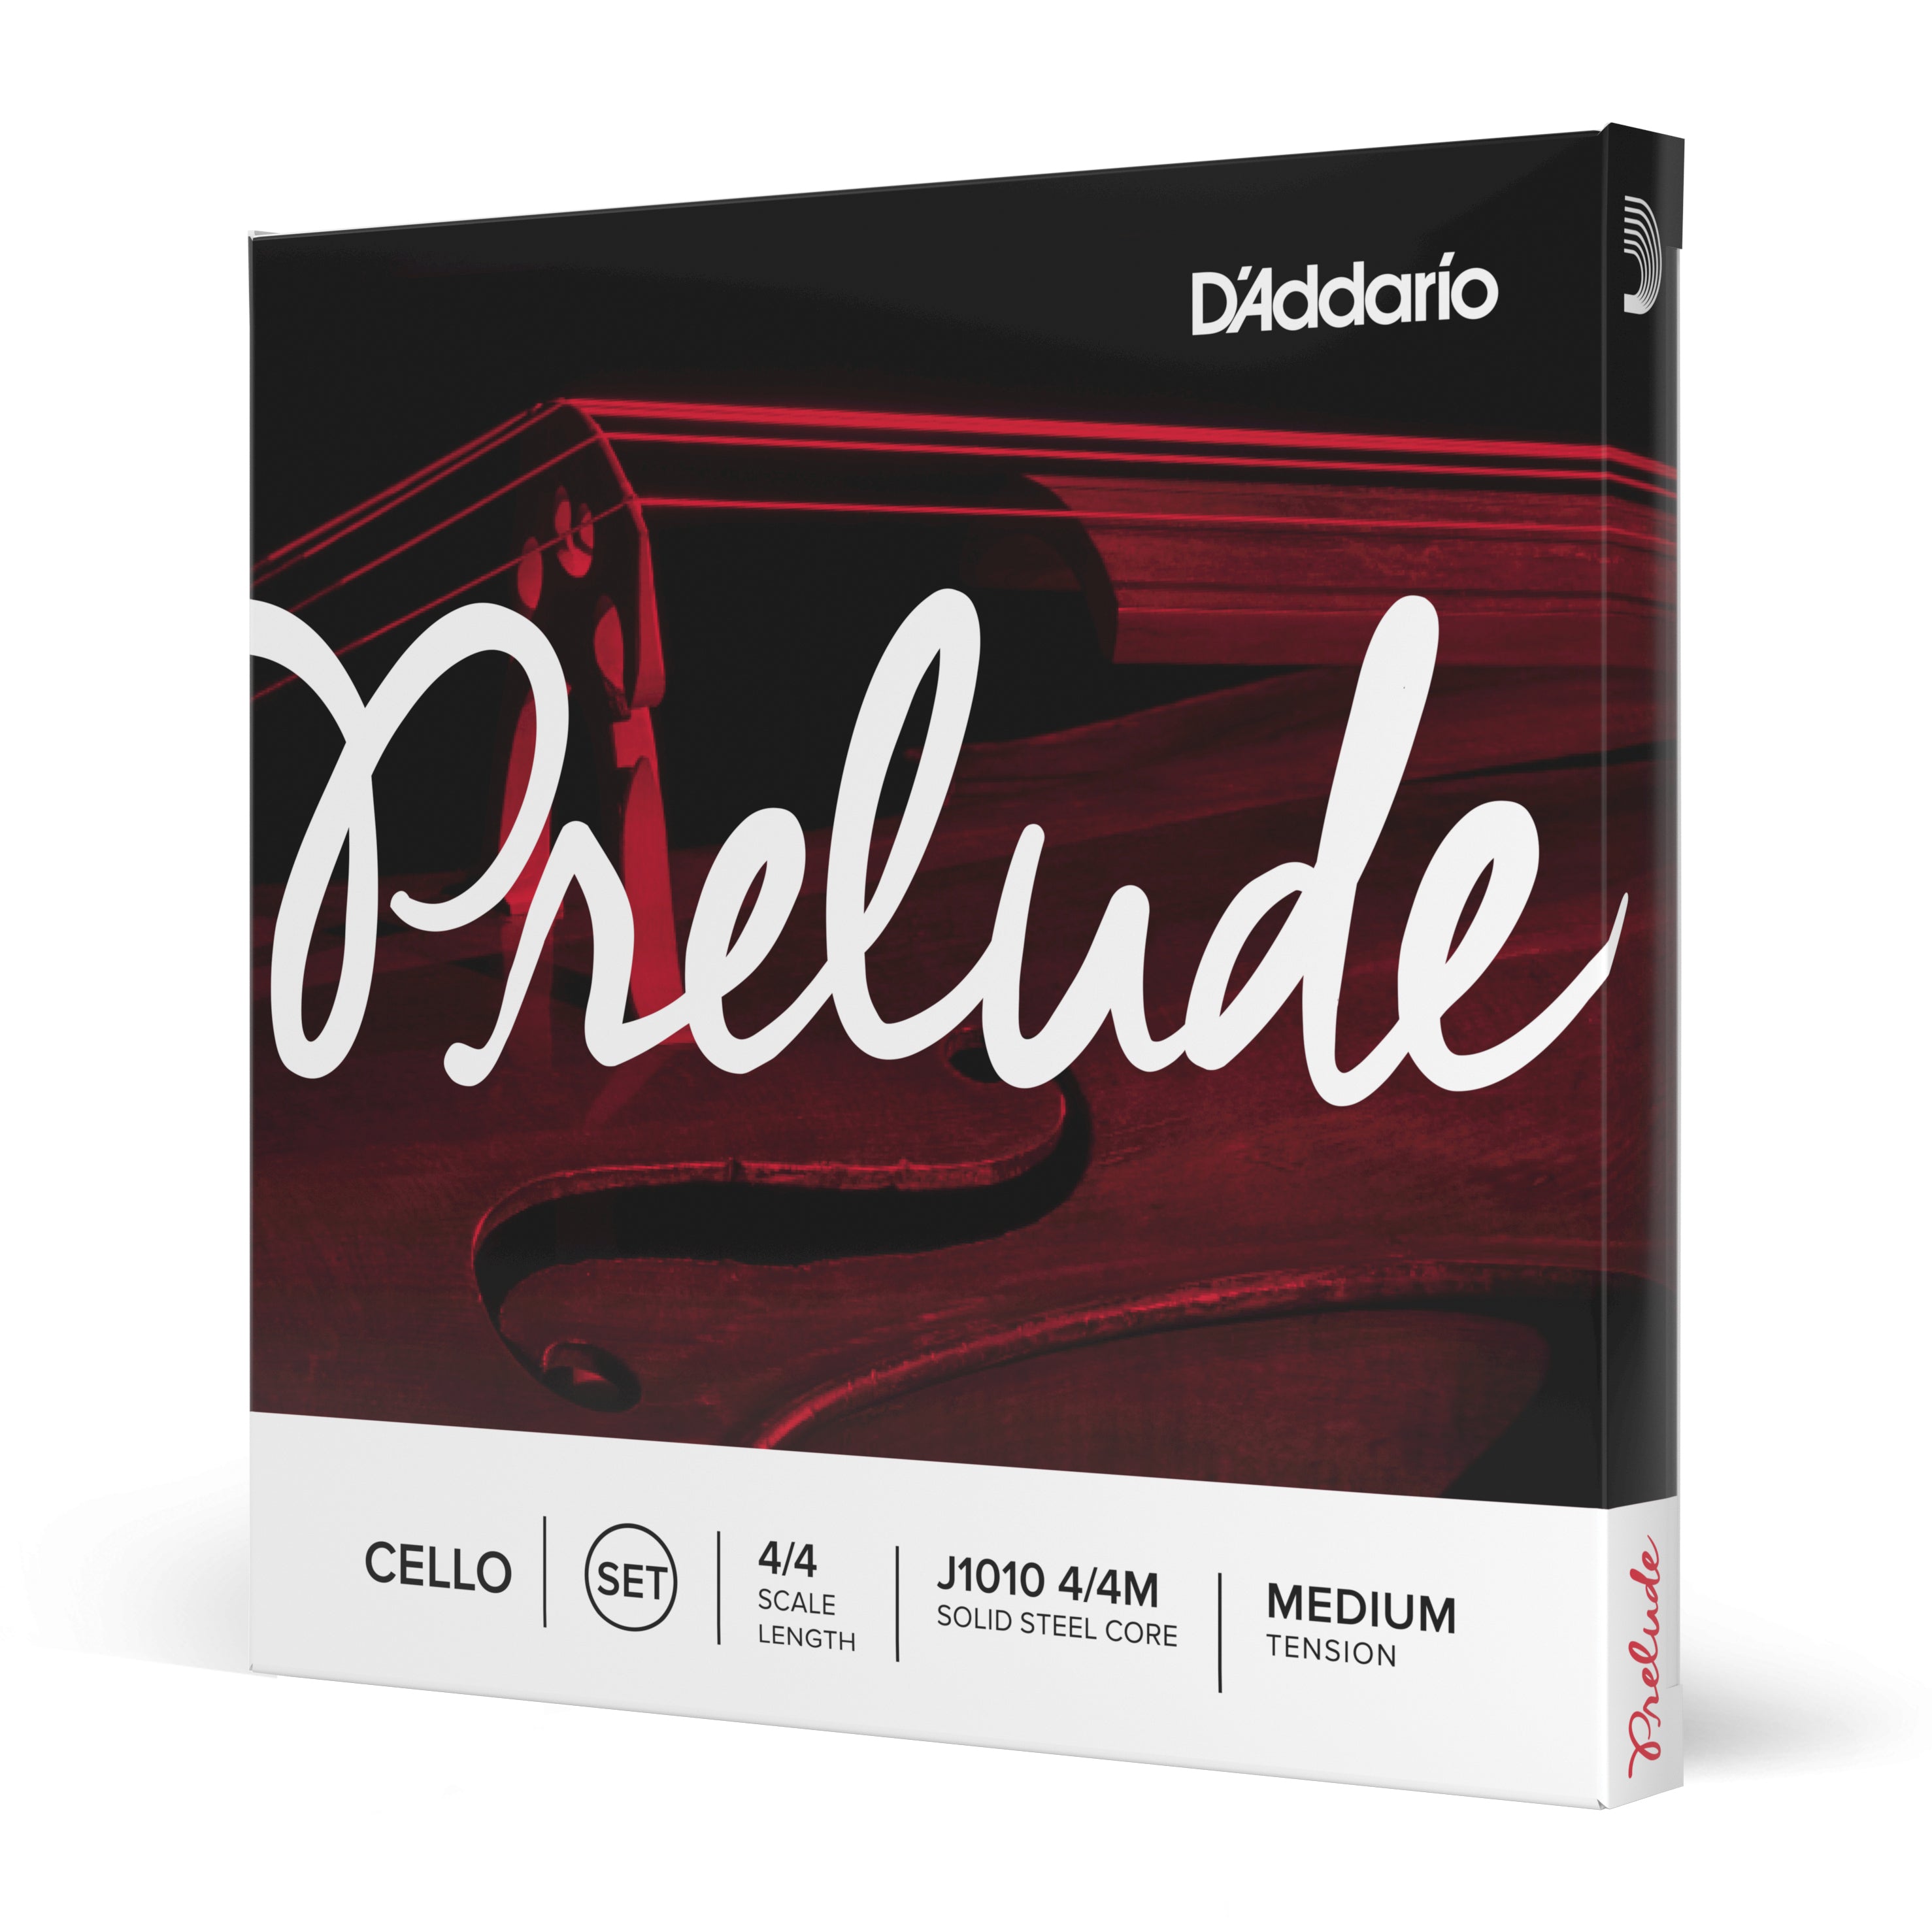 D'Addario Prelude Cello String